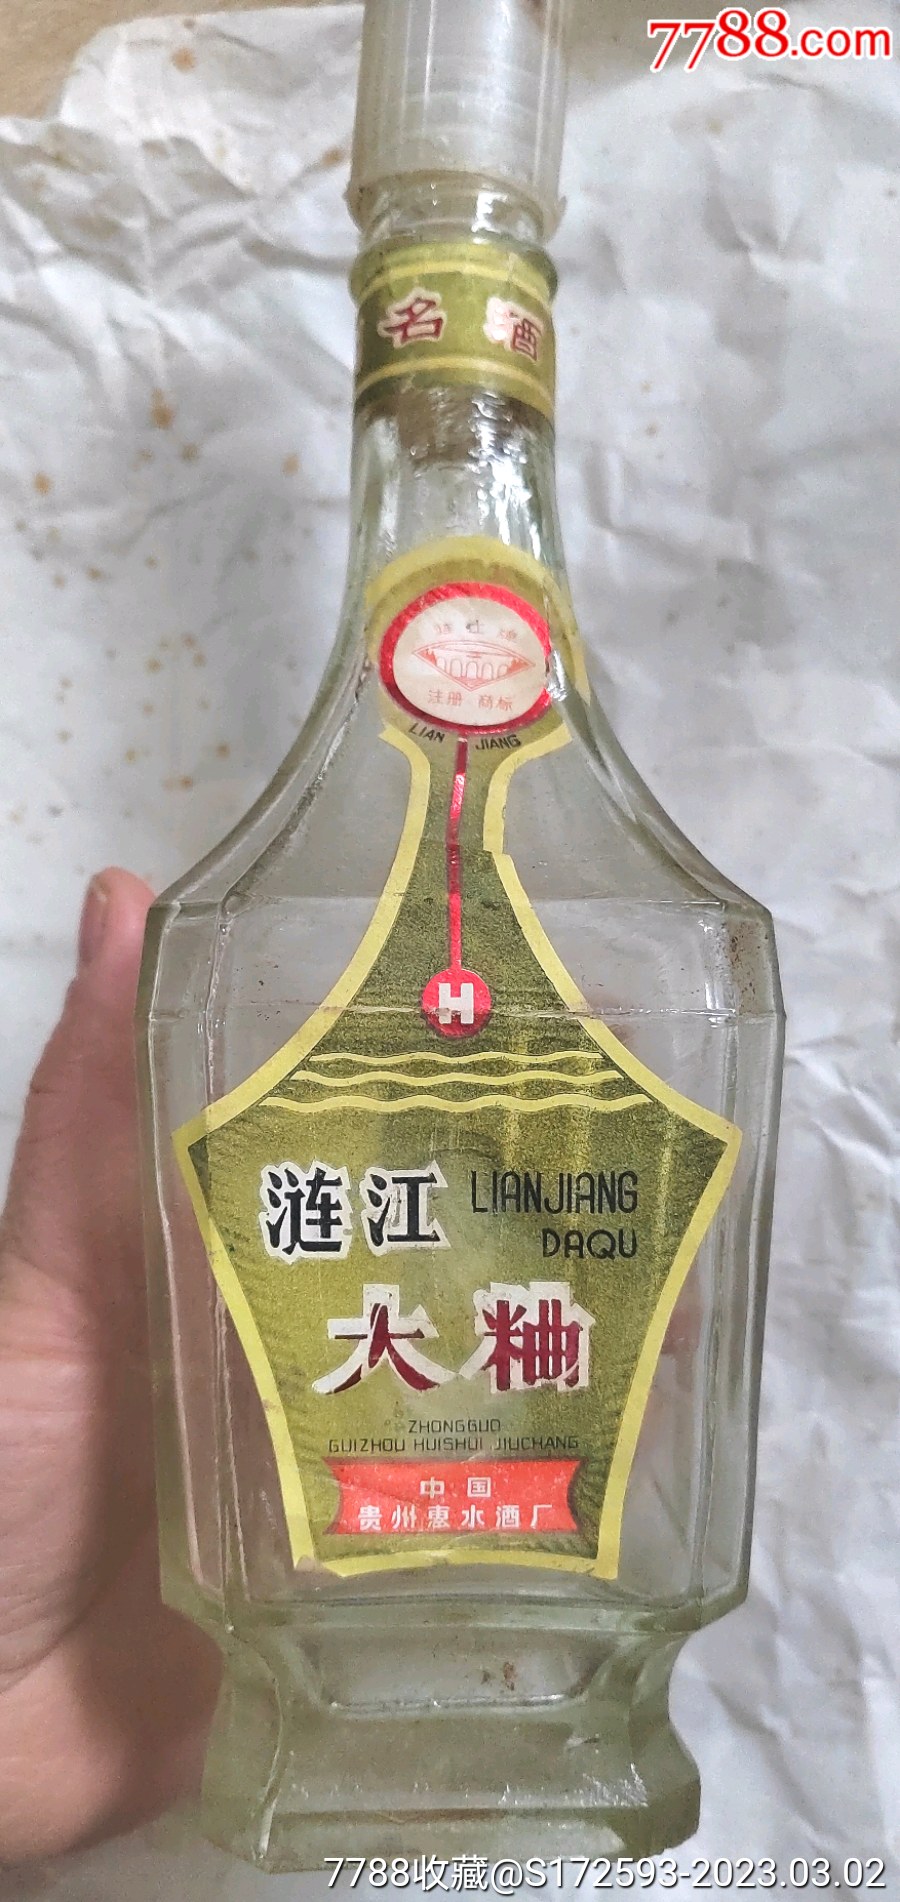 旧的酒瓶收藏价格表图片